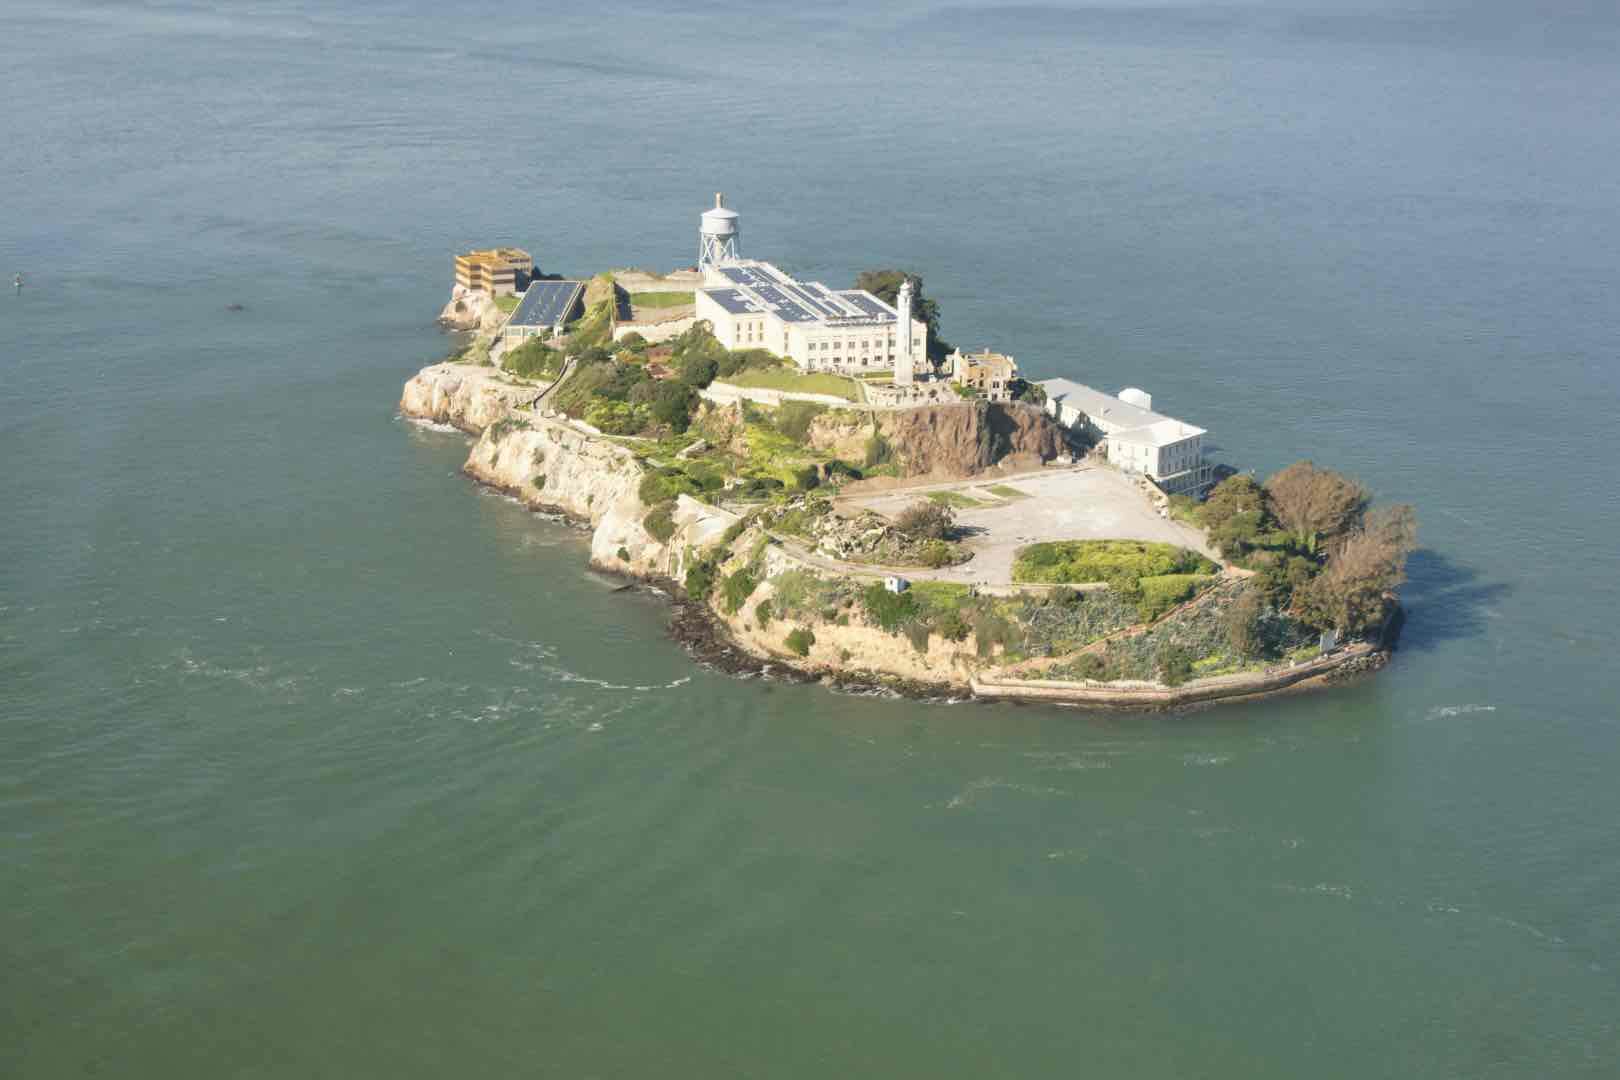 Alcatraz Island, San Francisco